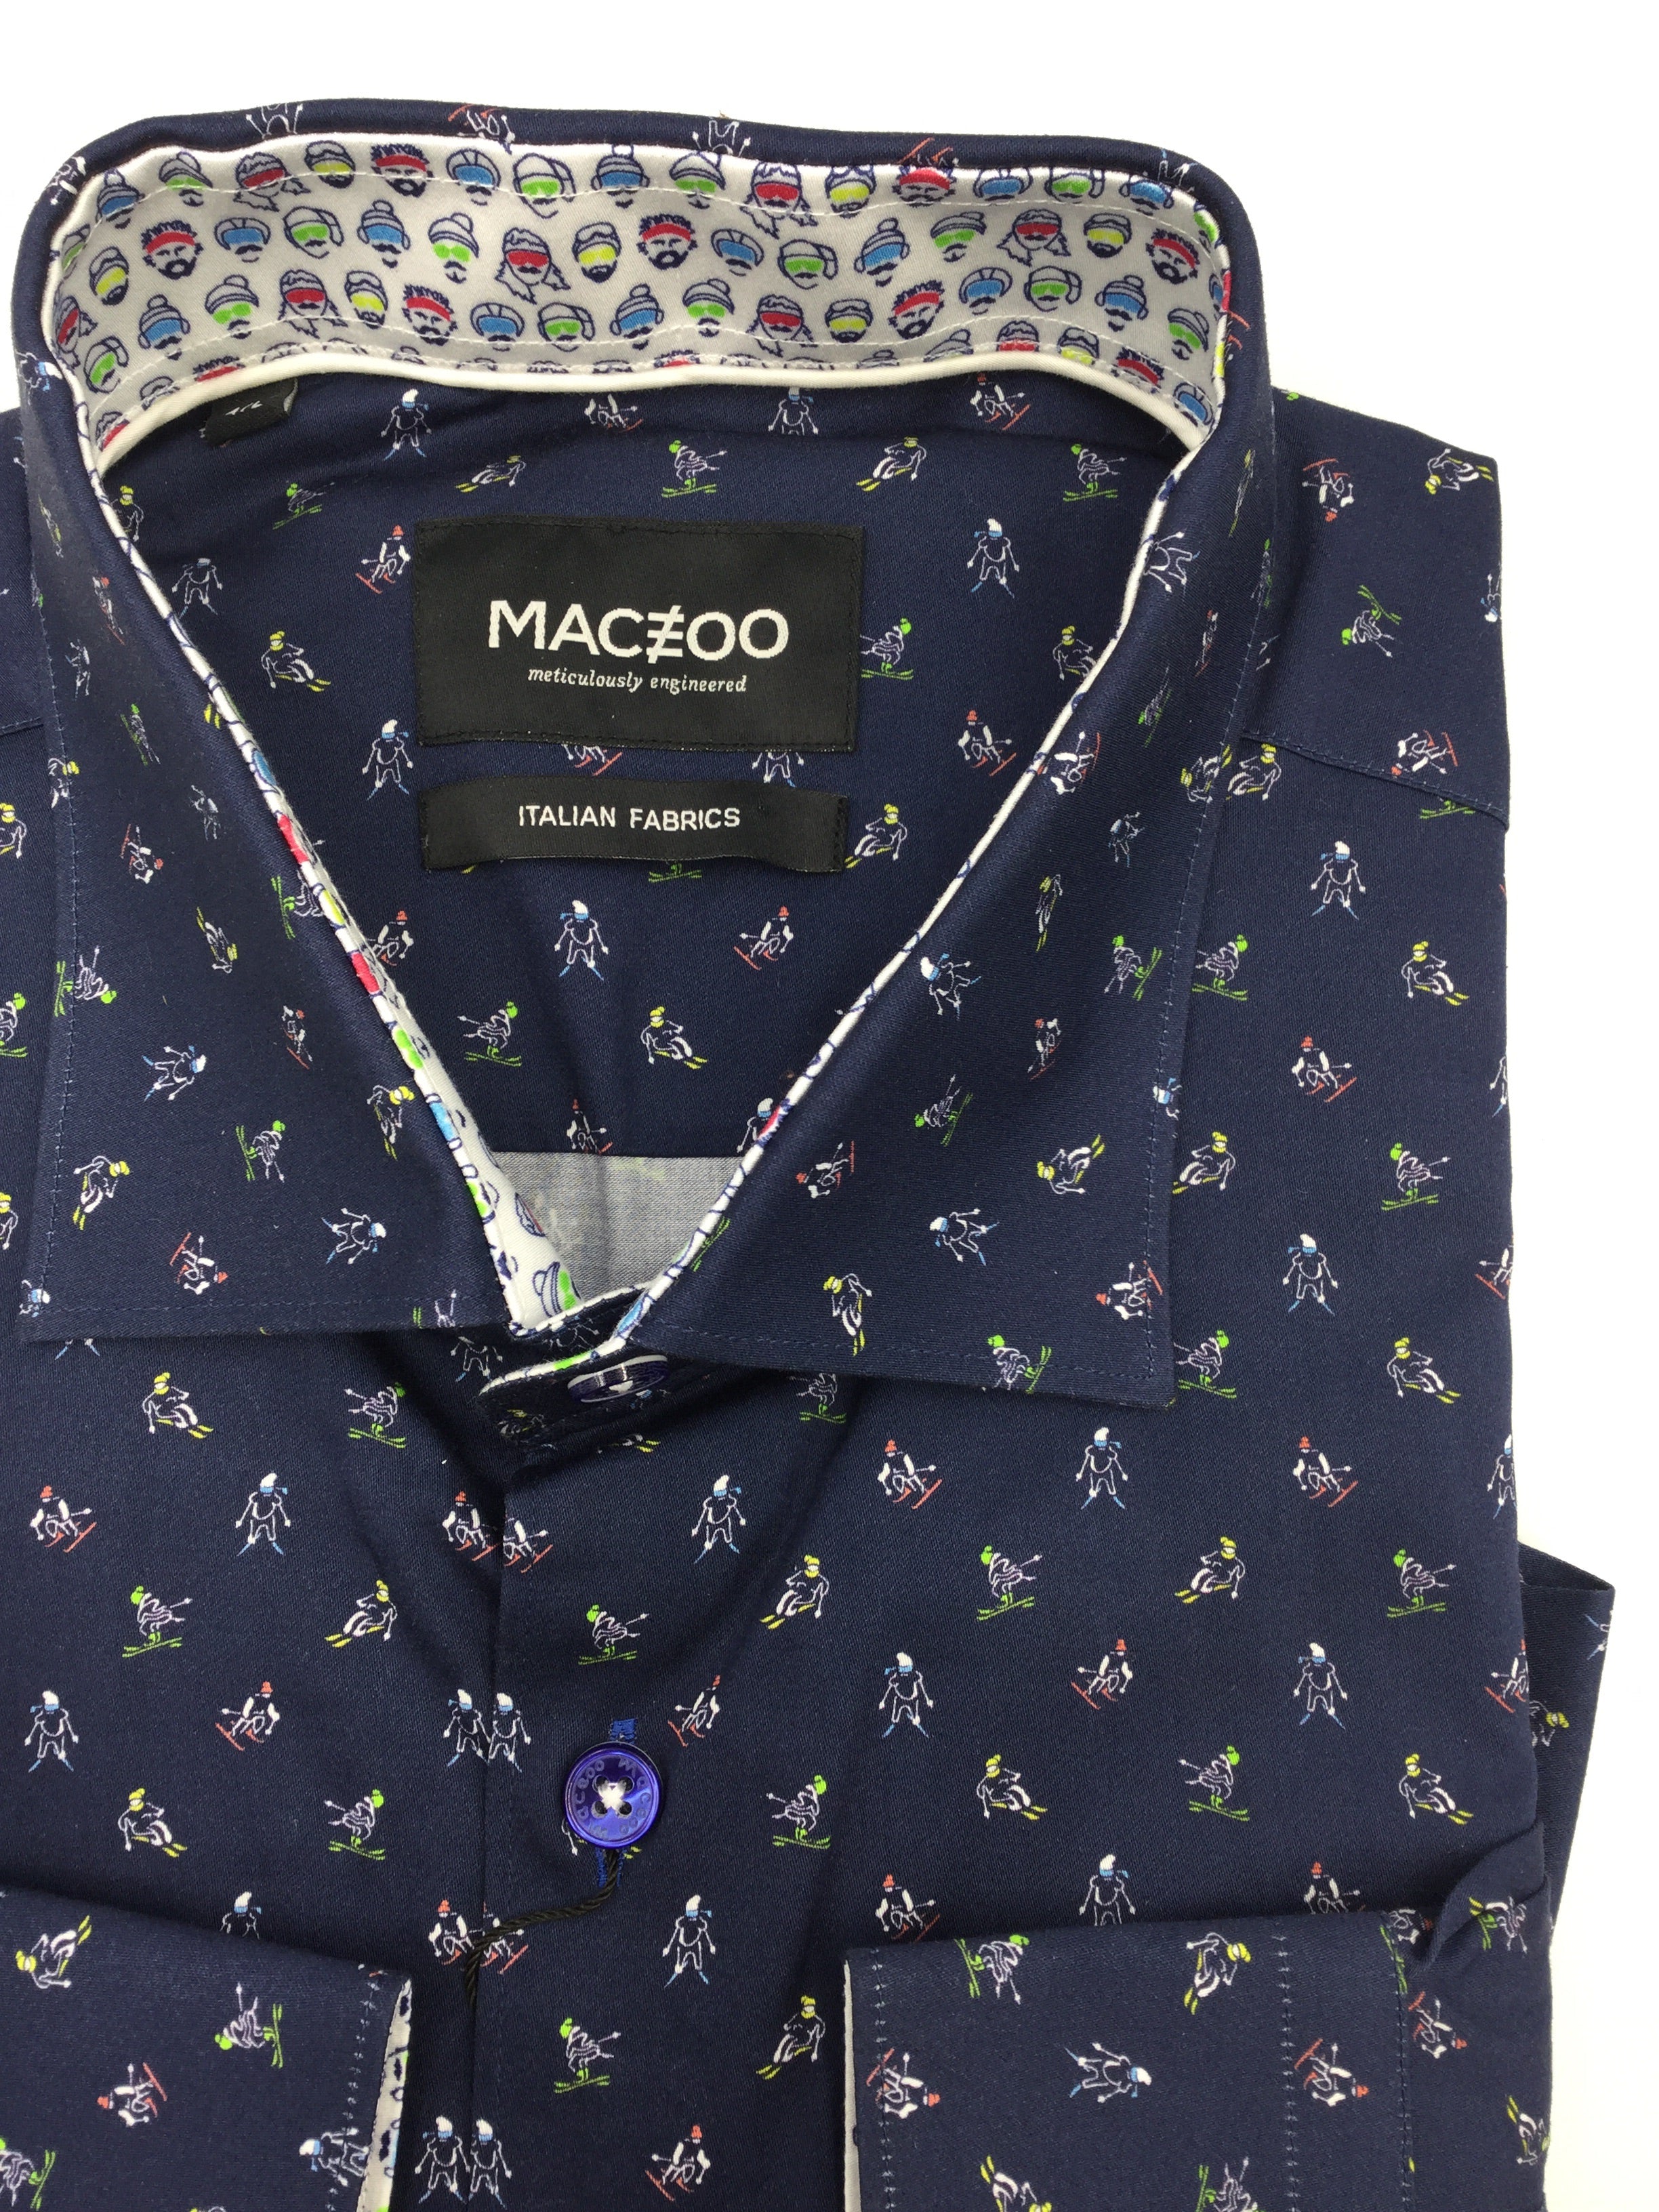 Maceoo Sportshirt Fibonacci - Mastroianni Fashions